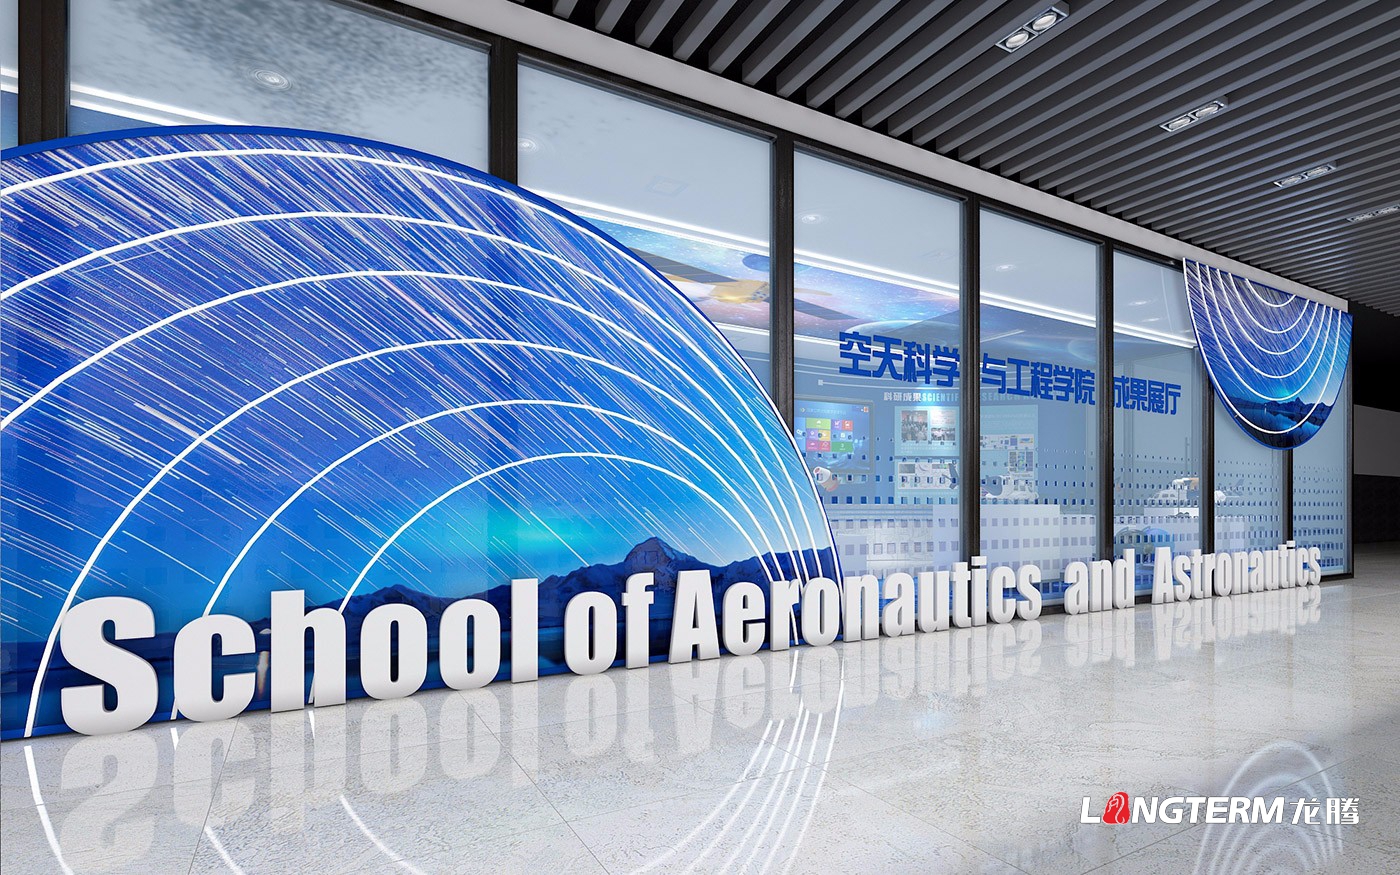 四川大学空天科学与工程学院结果展厅策划设计与施工制作